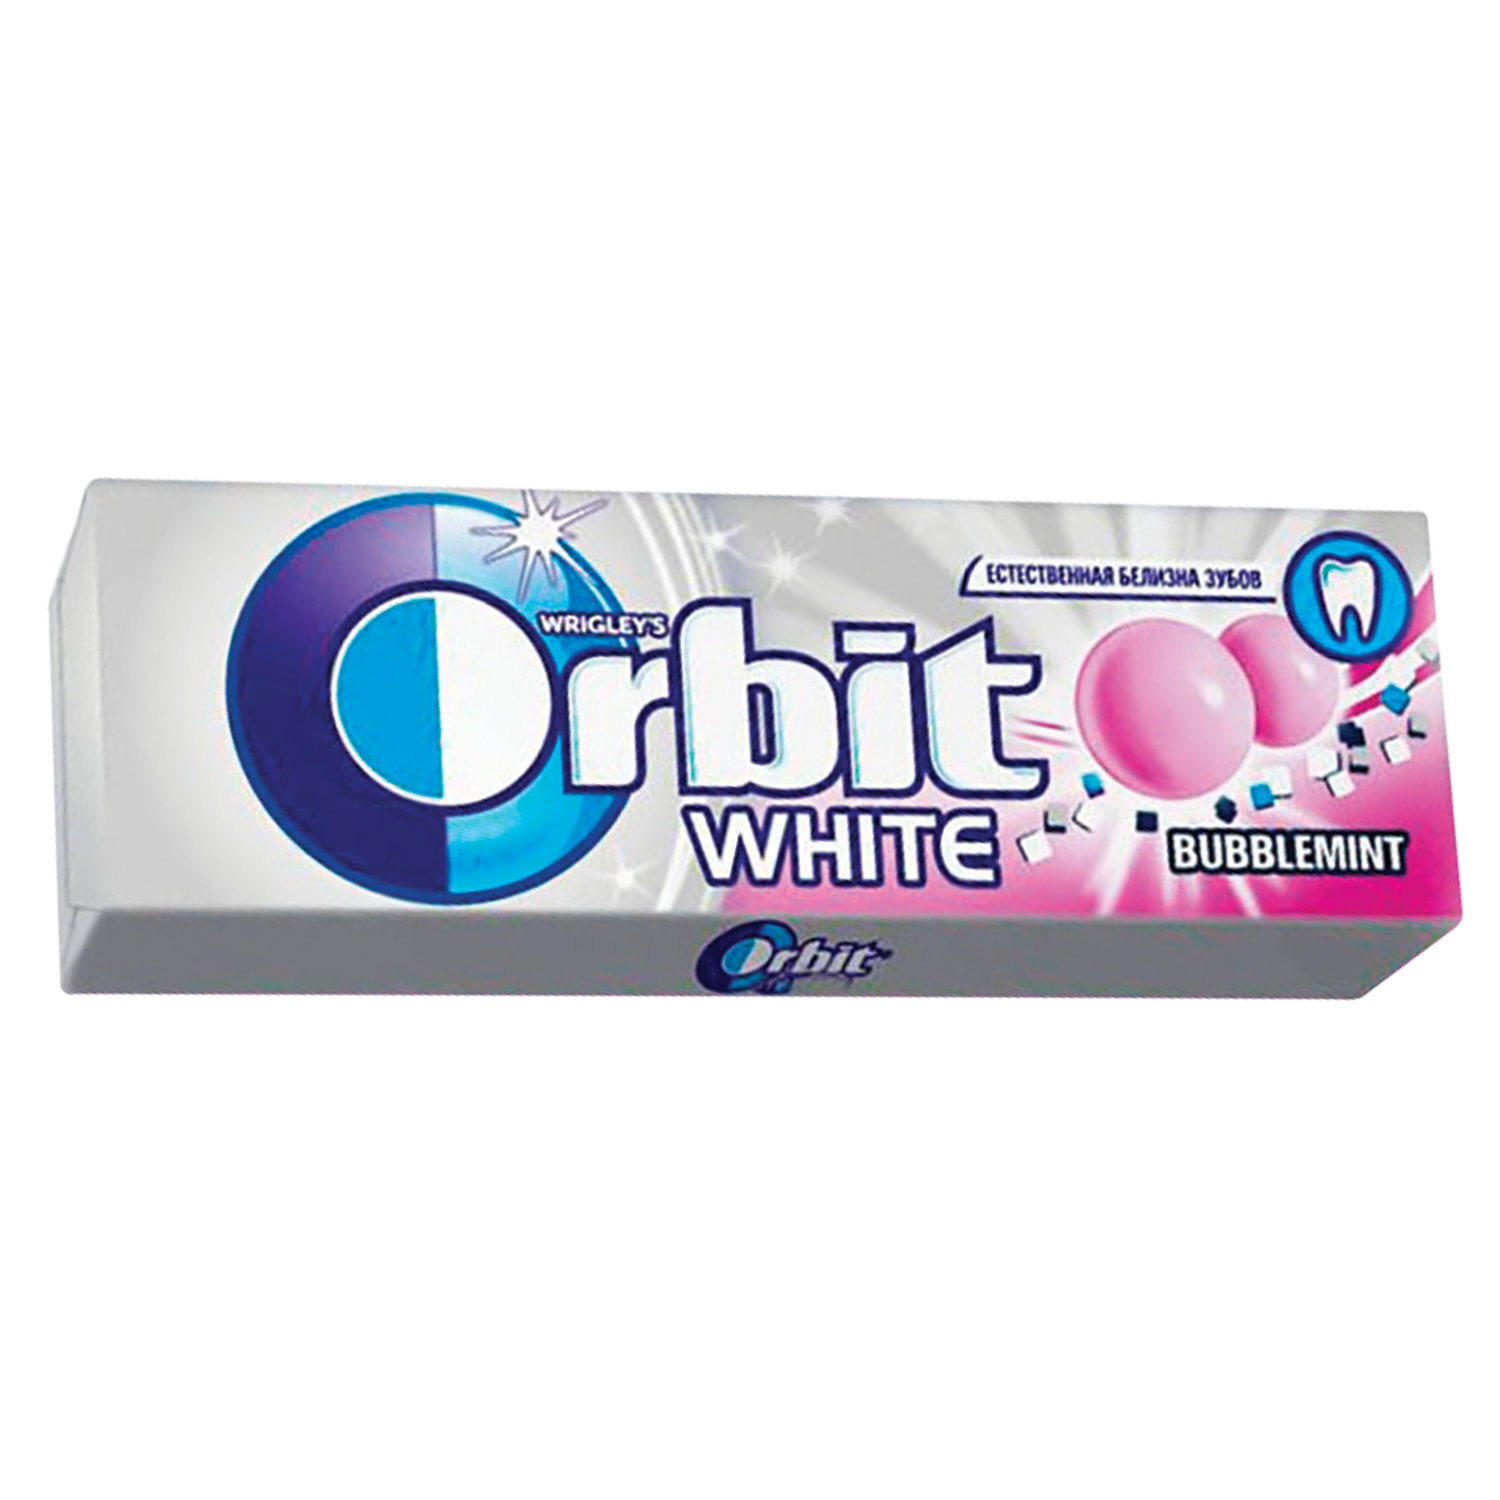 Жевательная резинка Orbit White Bubblemint, 13,6г. Резинка жевательная Orbit баблминт, 13.6г. Orbit жевательная резинка Bubblemint 13.6. Жев.резинка Orbit белоснежный Bubblemint 13,6г.